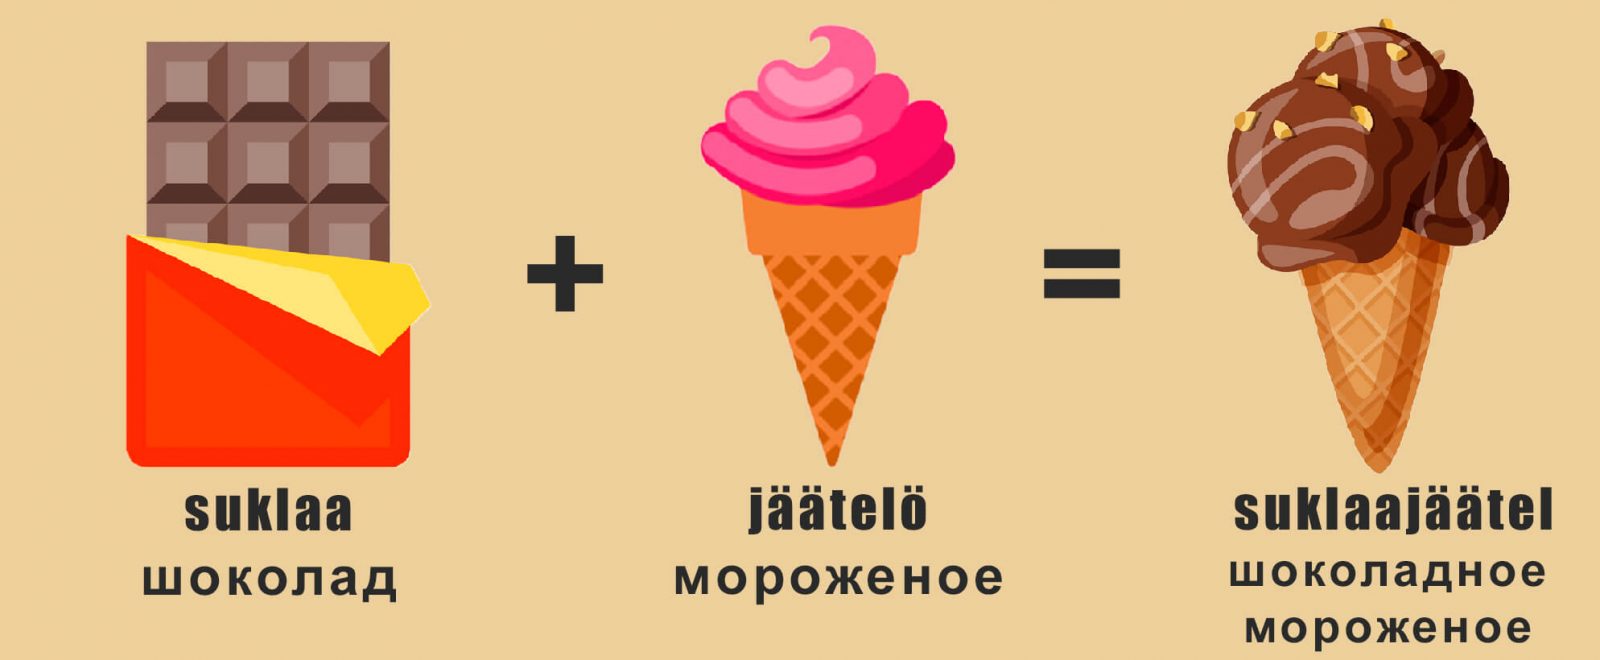 Шоколадное мороженое на финском языке